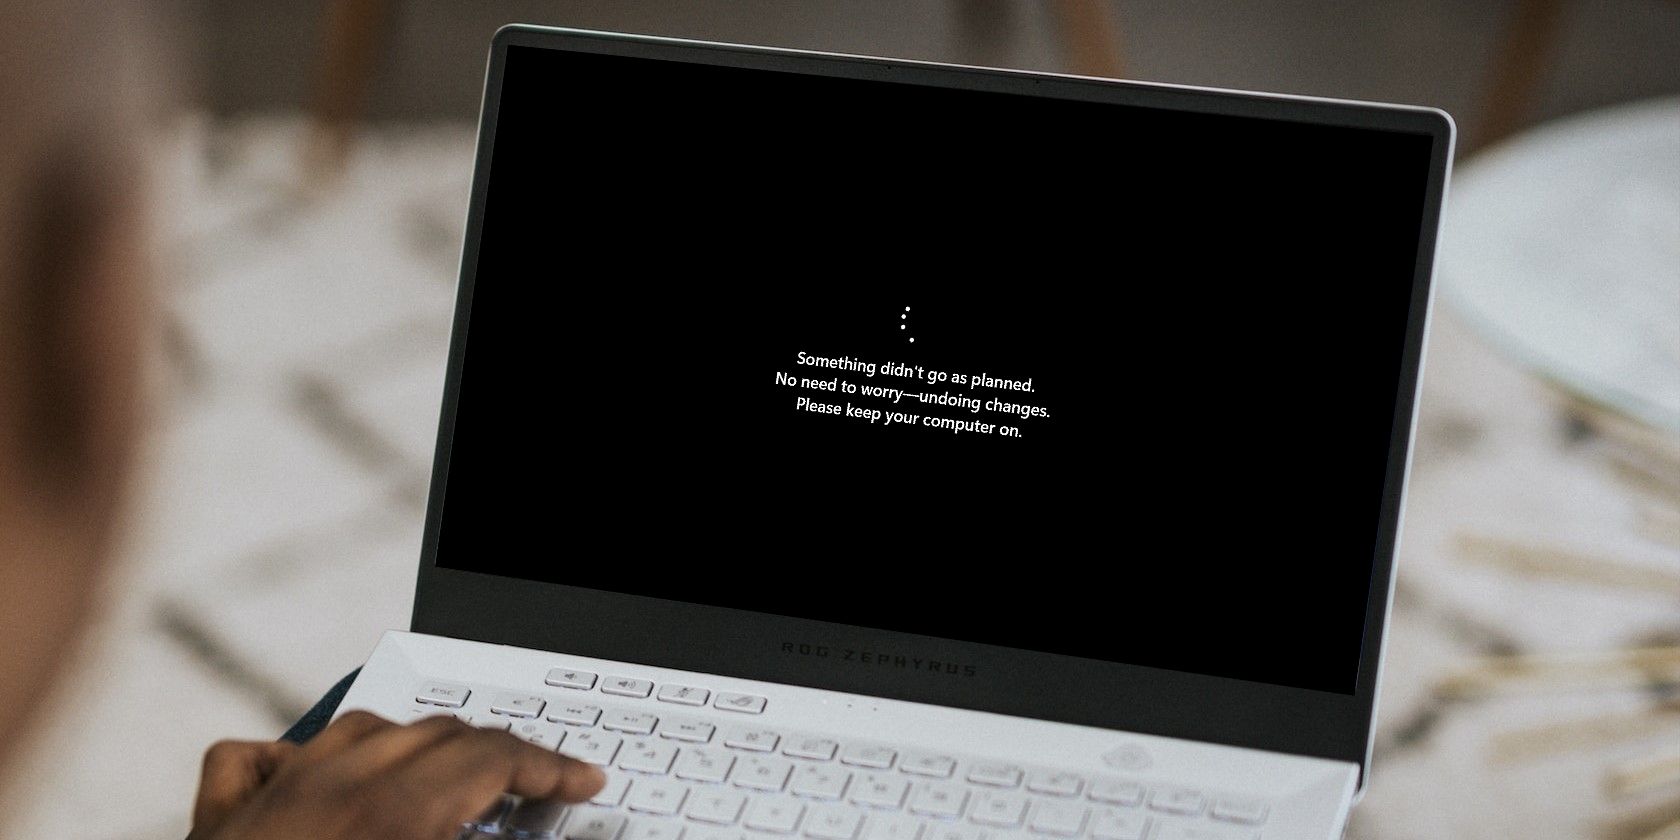 Сообщение об ошибке Центра обновления Windows на экране ноутбука